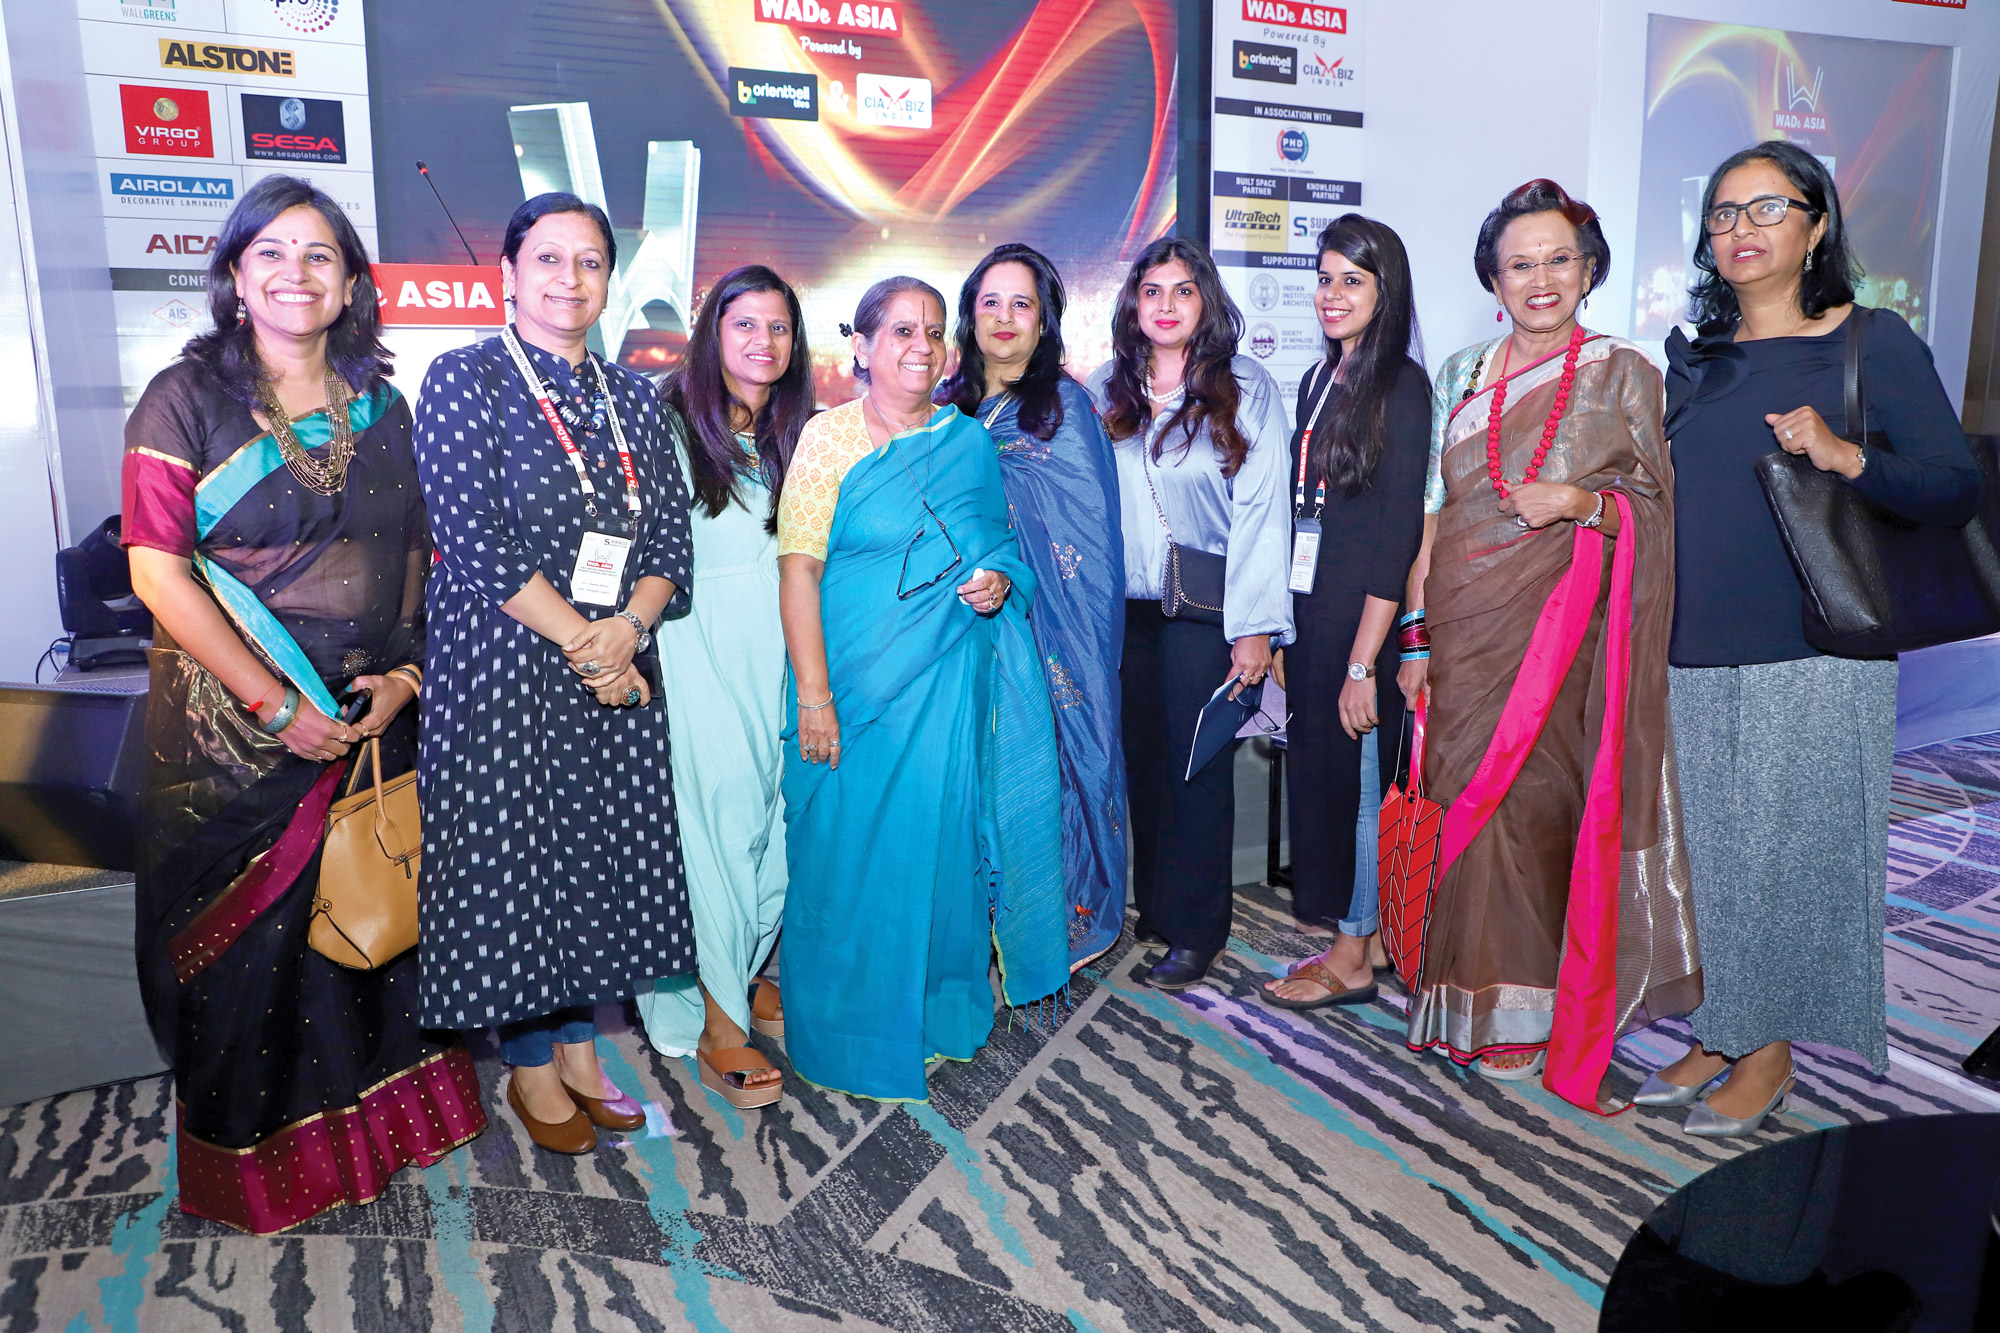 (From right) Ar Sonali Rastogi (Delhi) , Ar Nela D’Zoysa (Sri Lanka), a delegate, Ar Bhavya Kenkare (Mumbai), Ar Payal Kapoor, Ar Namita Singh (Chandigarh), Ar Shilpa, Ar Sabeena Khanna (Gurgaon), Ar Murugkar (Pune)